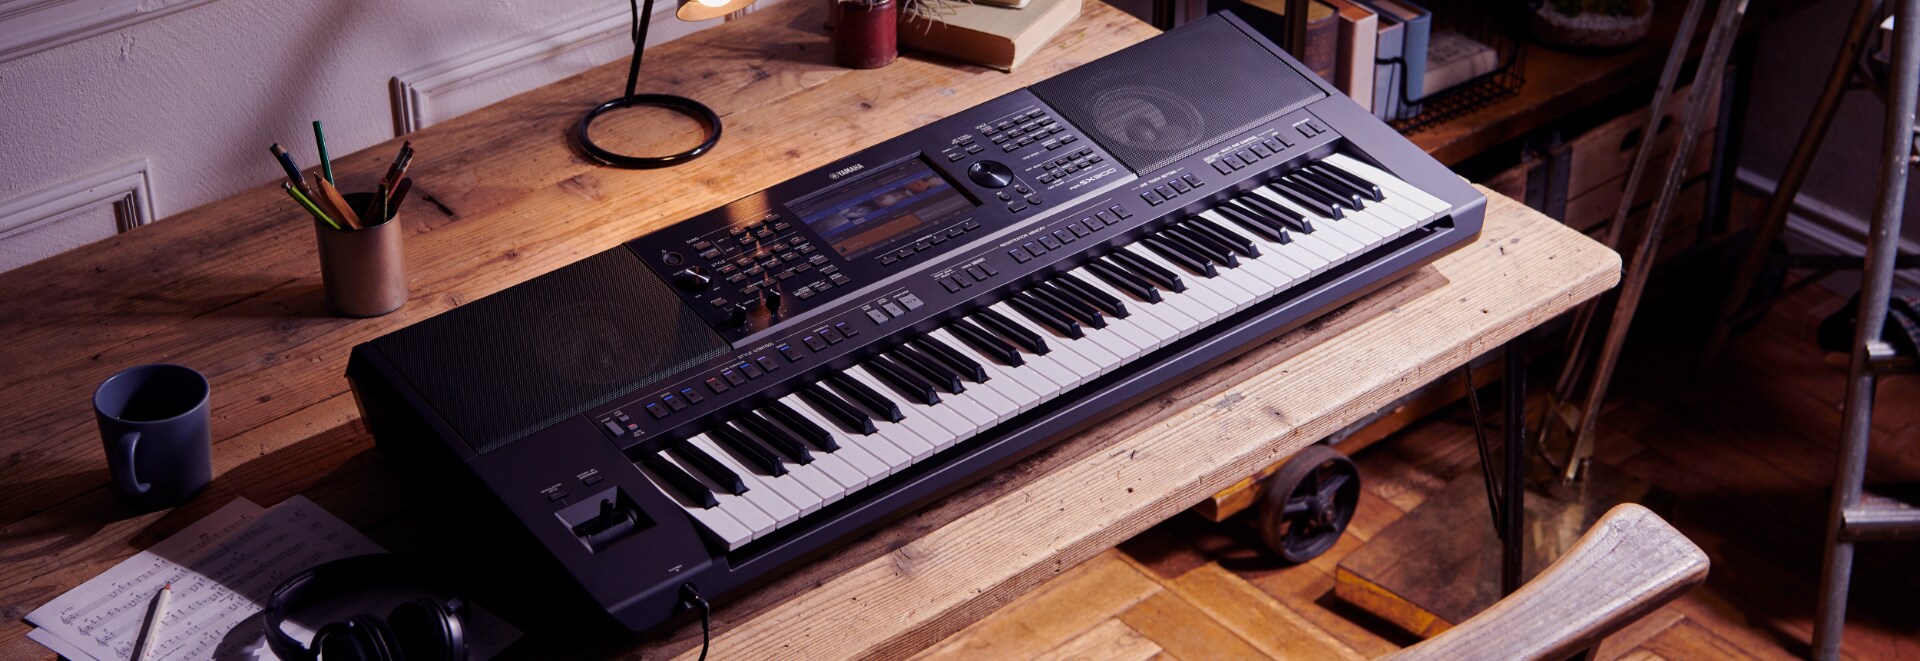 Yamaha PSR-SX900 Arranger Keyboard